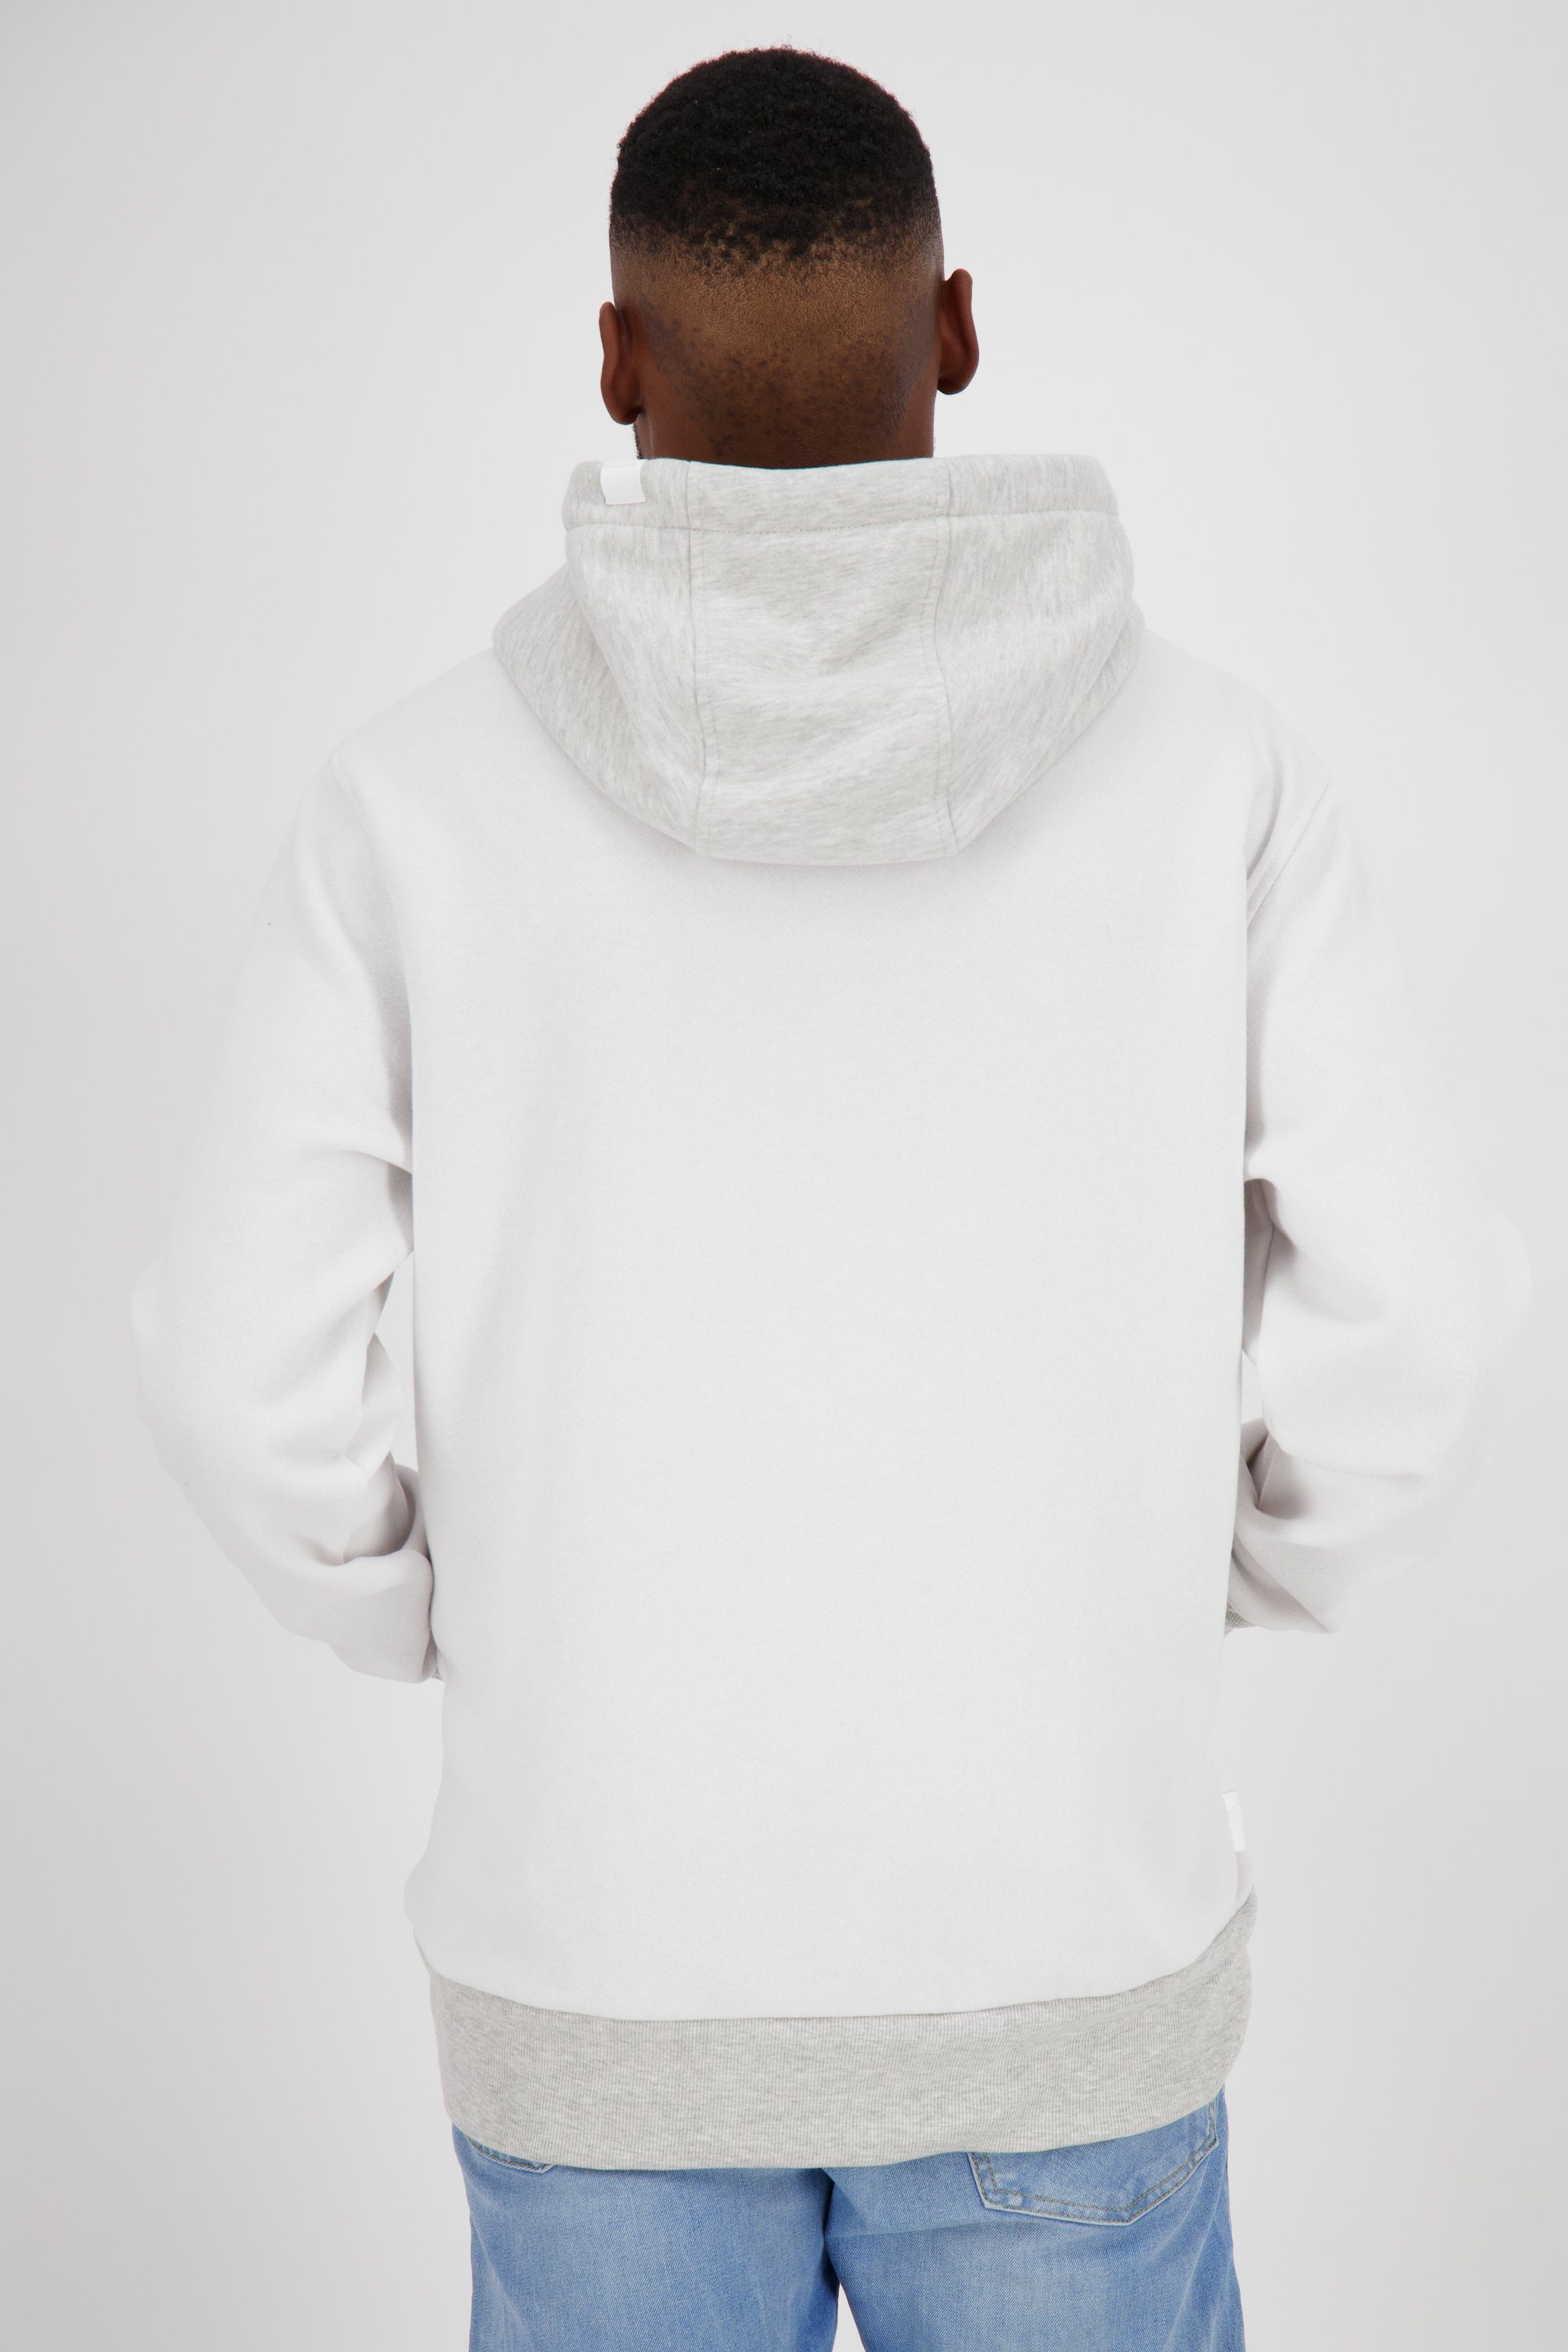 Alife & Herren Sweatshirt white Sweat MatteoAK Kickin Kapuzensweatshirt Kapuzensweatshirt